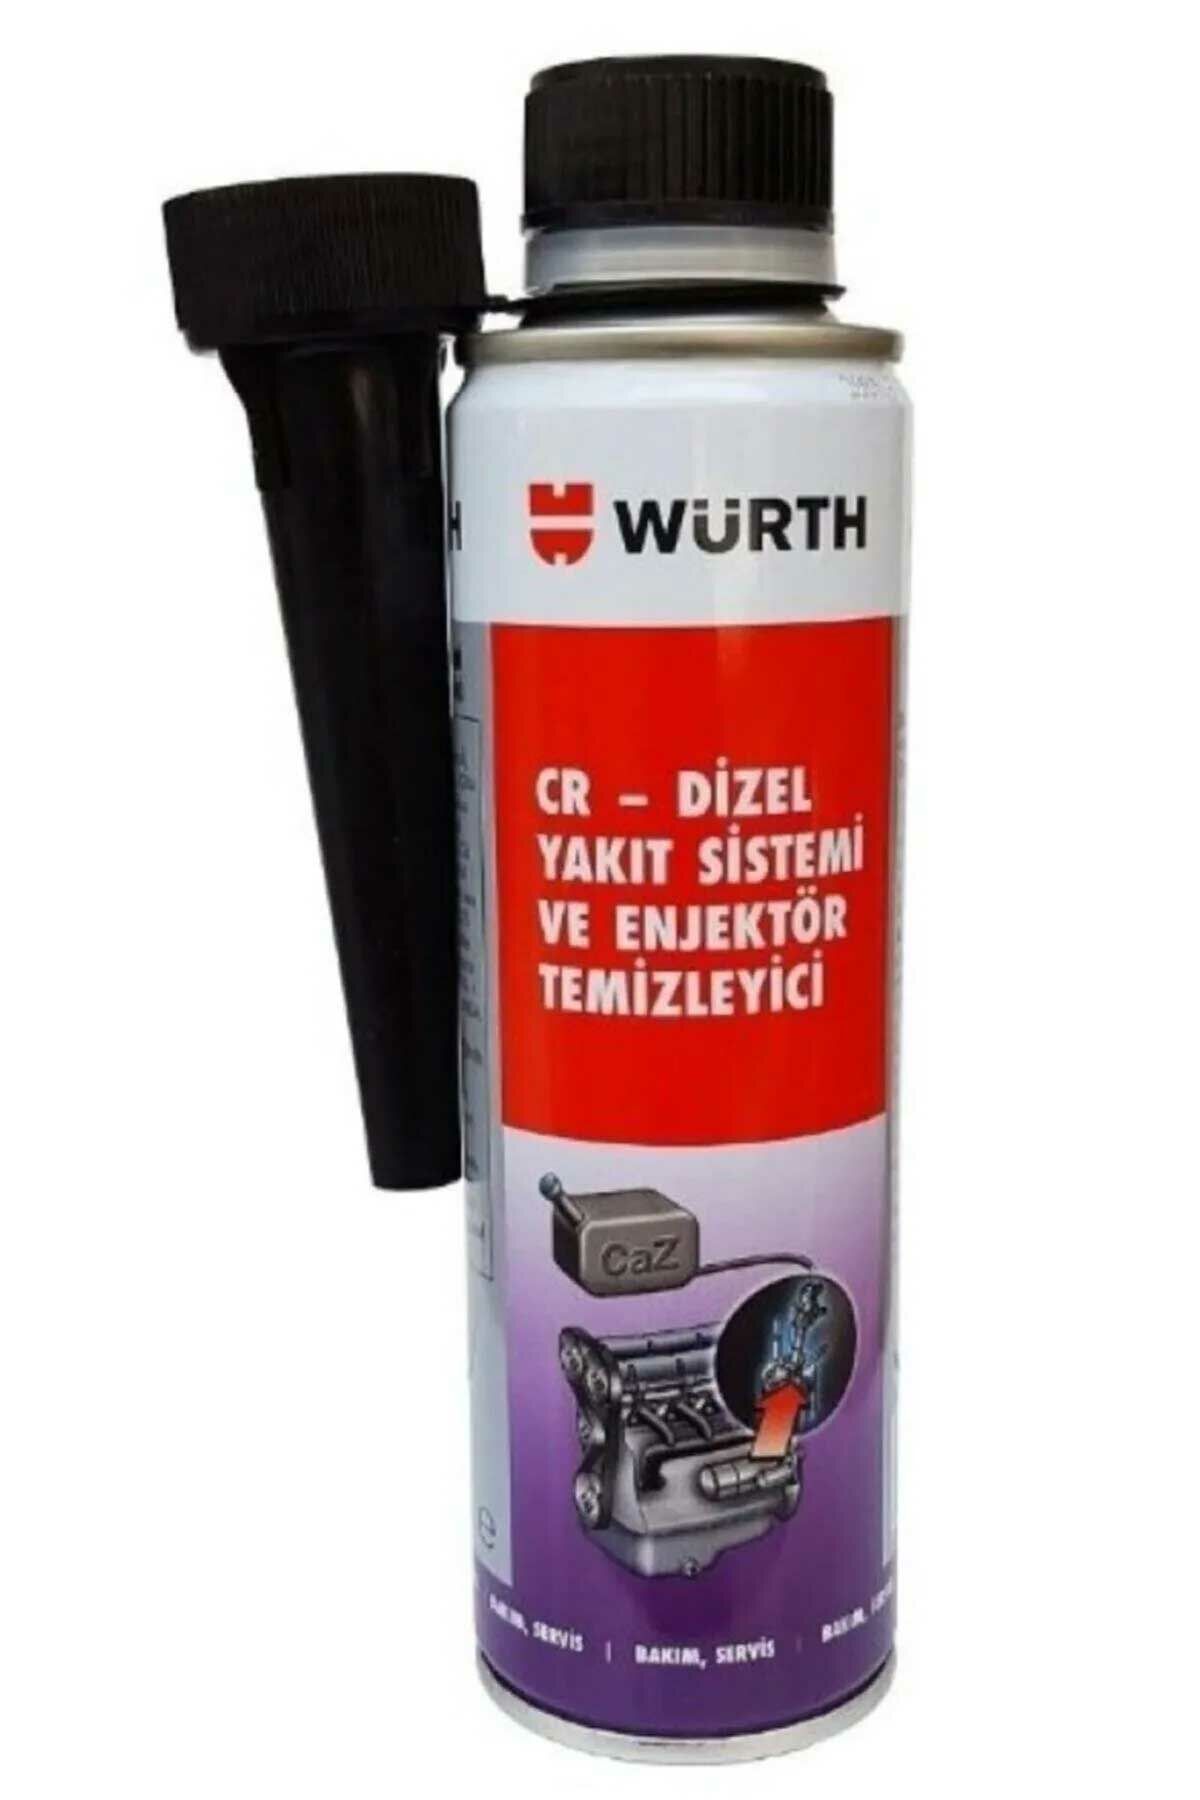 Würth Cr-dizel Yakıt Sistemi Ve Enjektör Temizleyici 300 ml